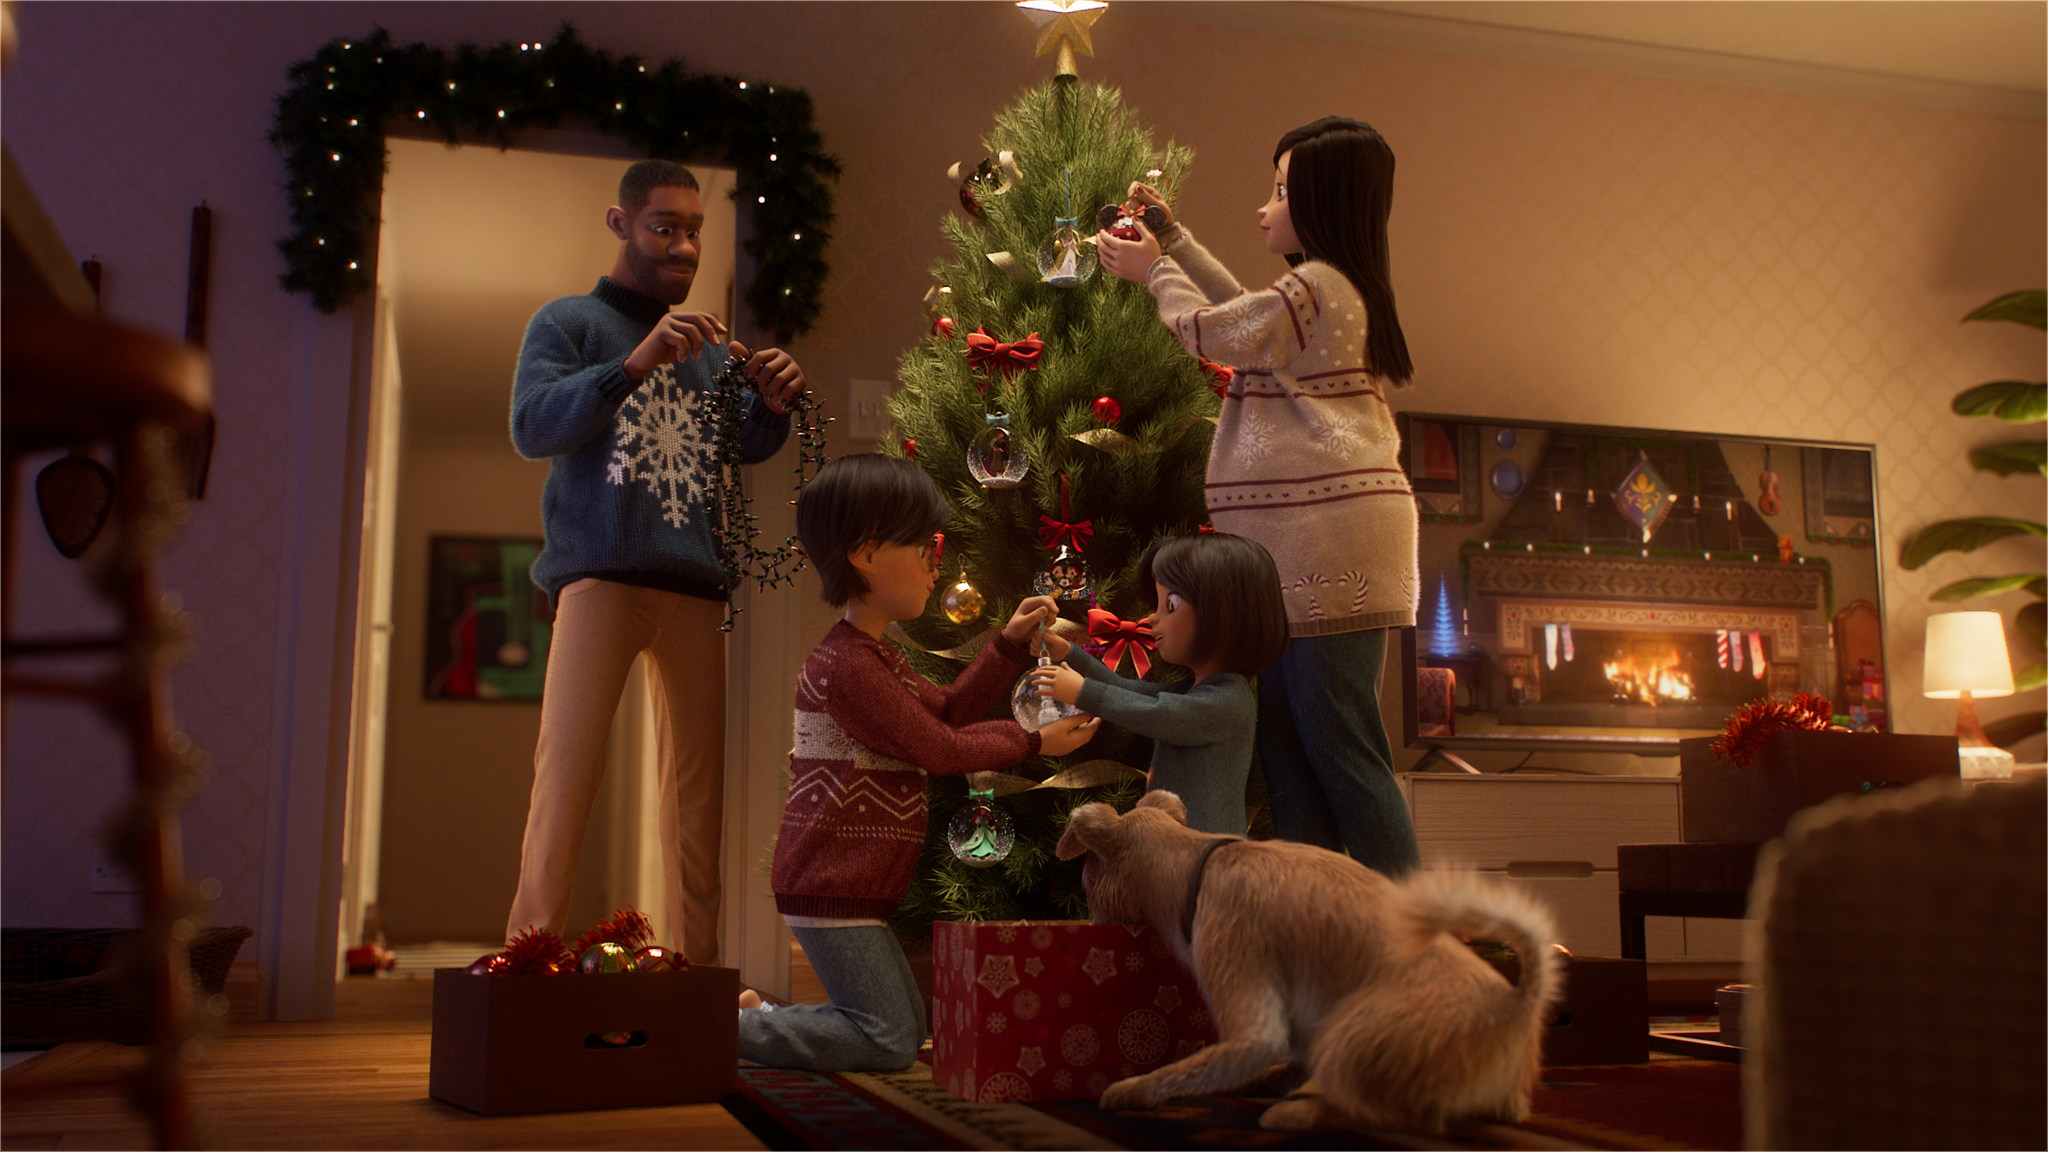 tre minuti e mille emozioni nella nuova storia di Natale Disney